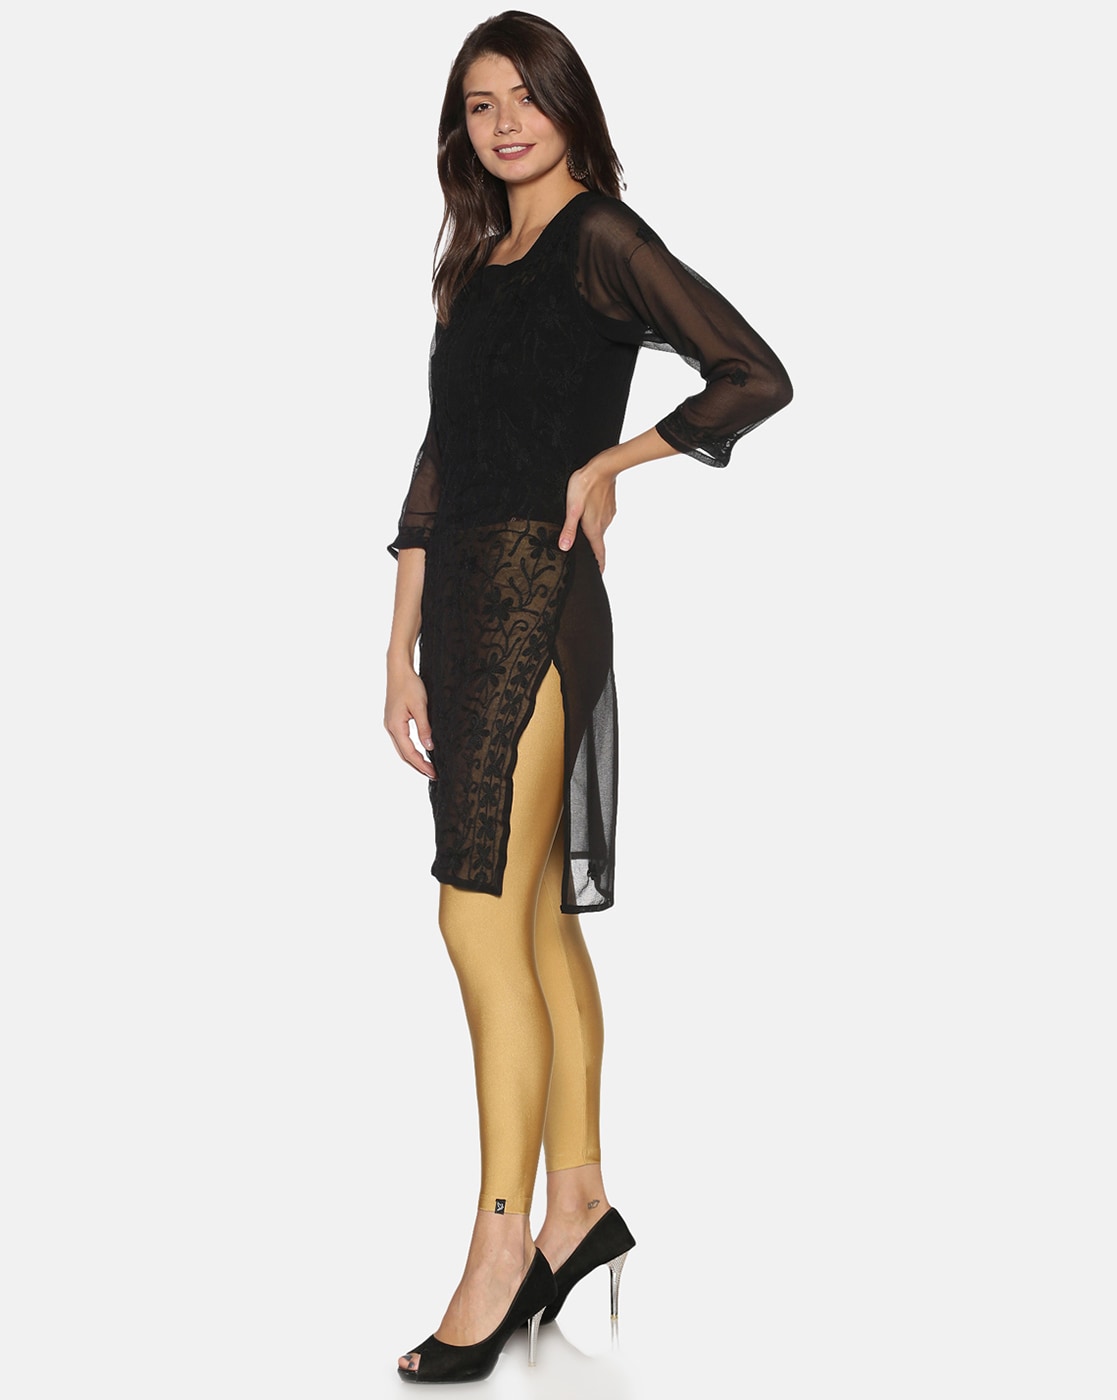 Buy Gold Shimmer Skin Fit Tights Online - Aurelia